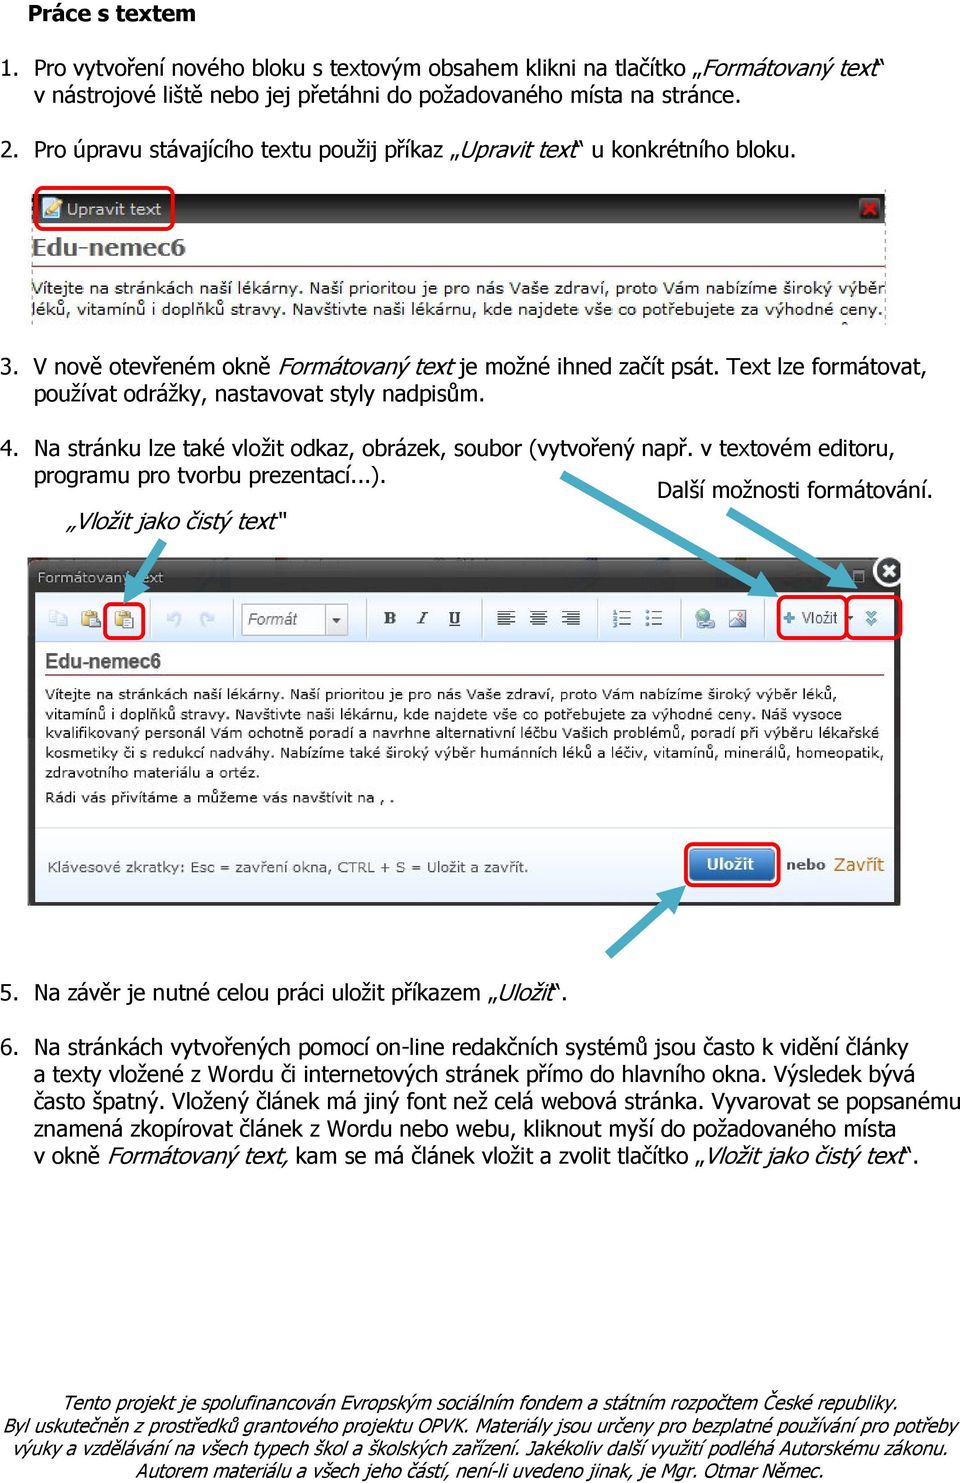 Text lze formátovat, používat odrážky, nastavovat styly nadpisům. 4. Na stránku lze také vložit odkaz, obrázek, soubor (vytvořený např. v textovém editoru, programu pro tvorbu prezentací...).